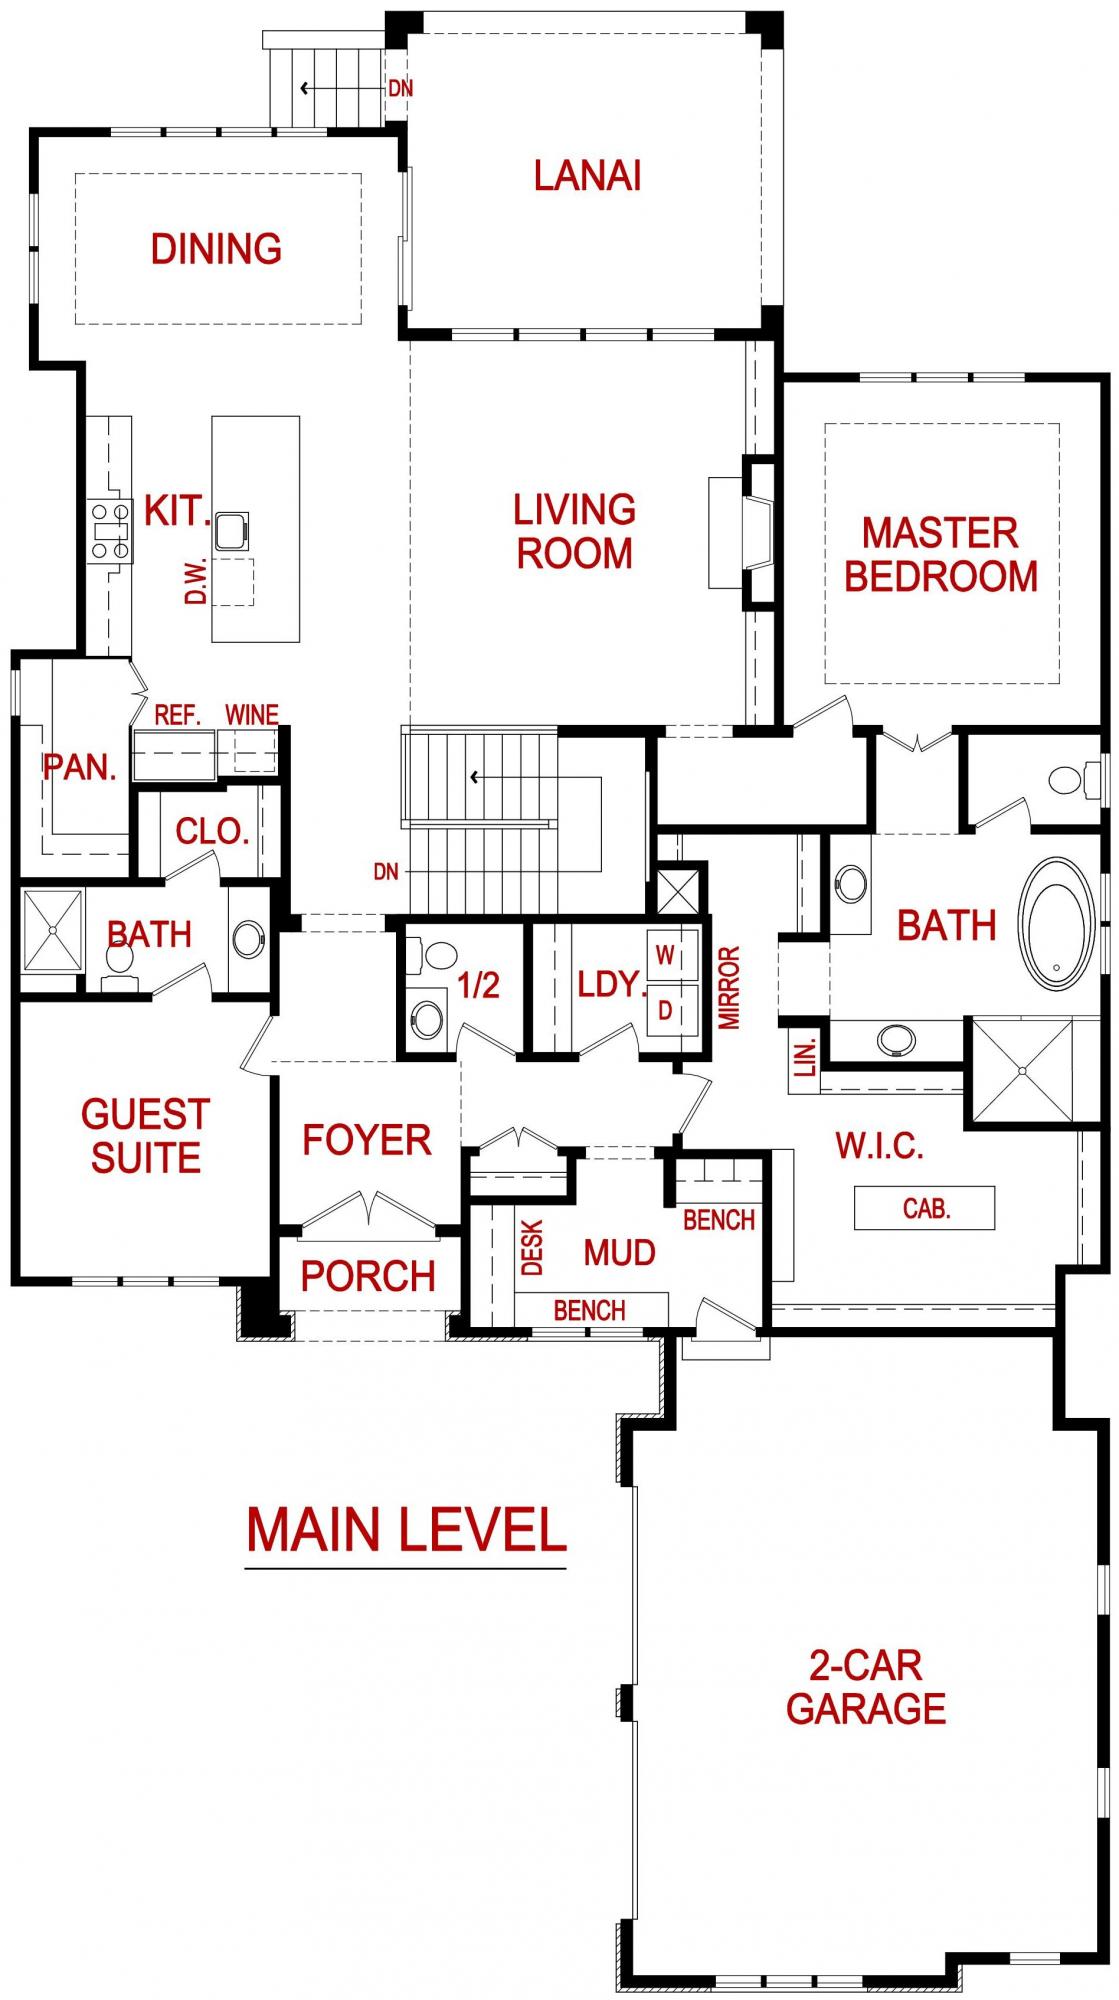 main level floor plan for the barrington model from Lambie custom homes